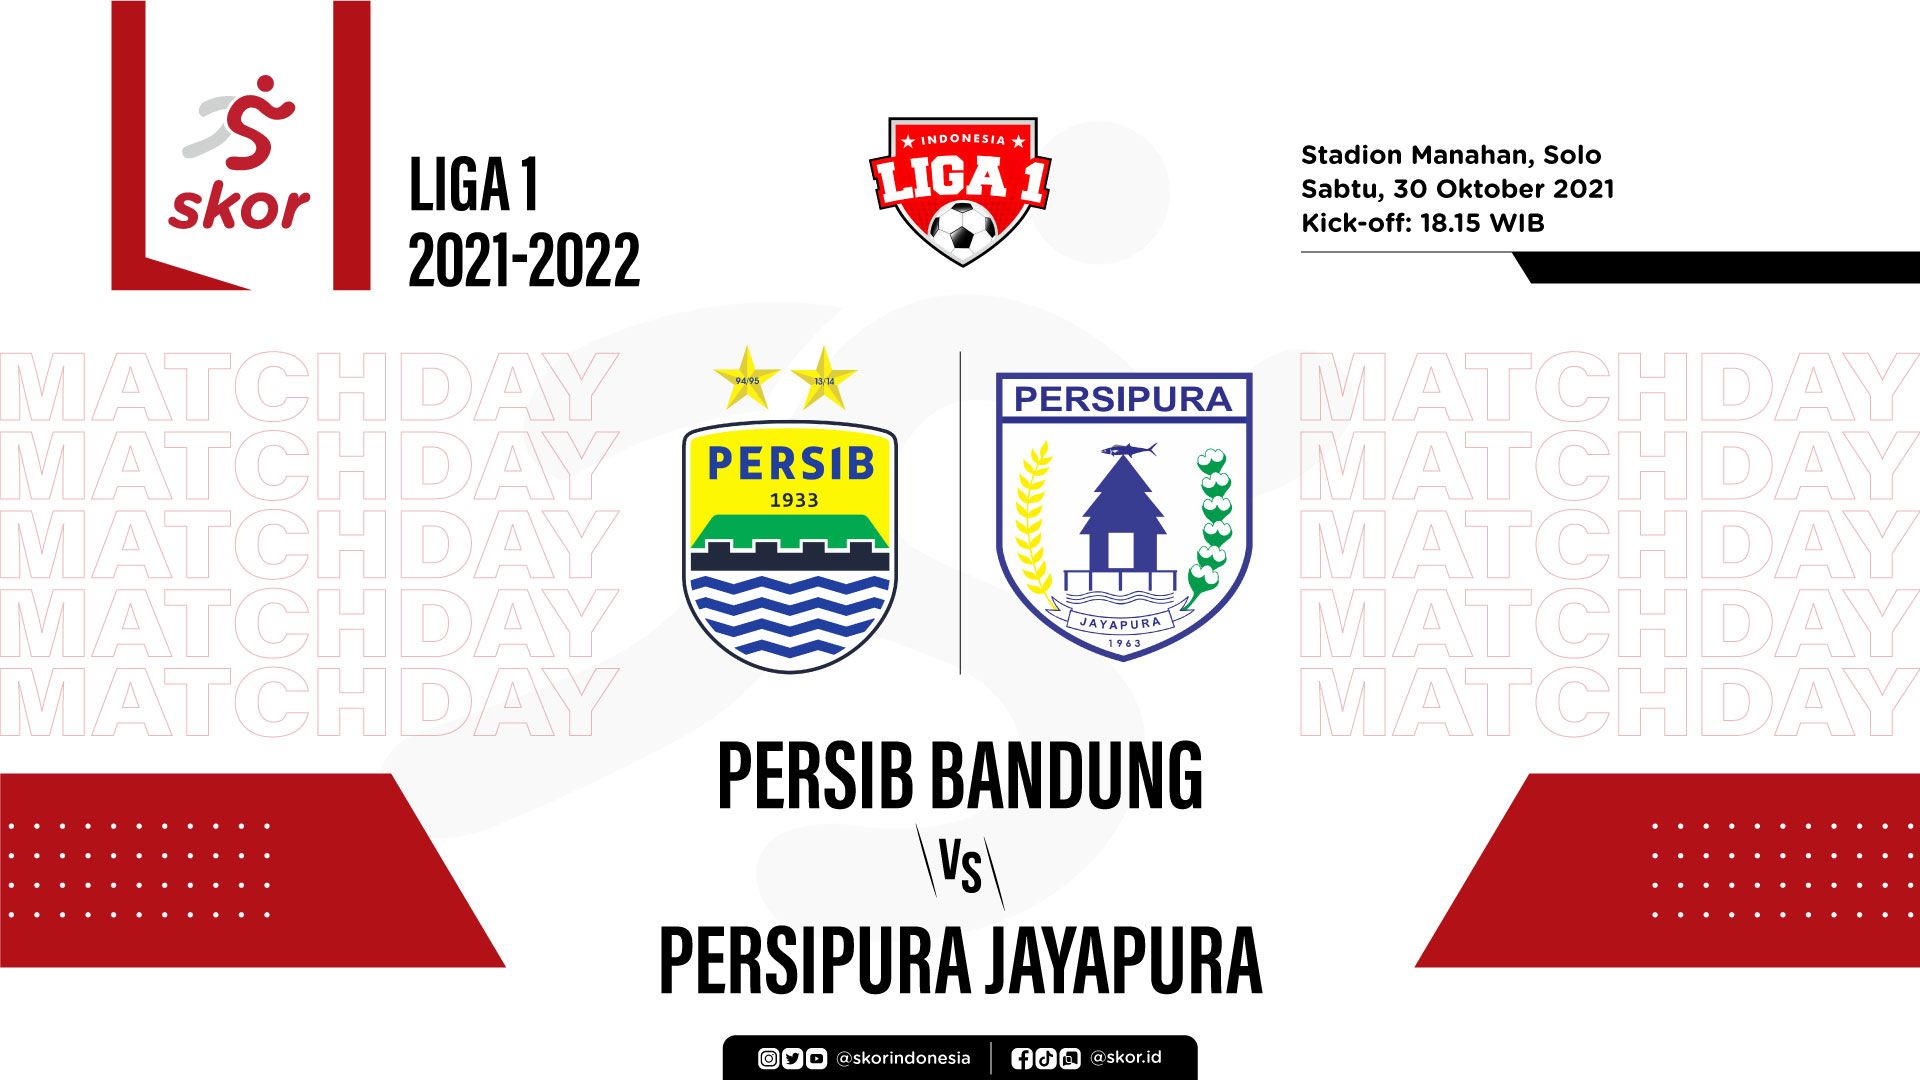 Persib Bandung vs Persipura Jayapura